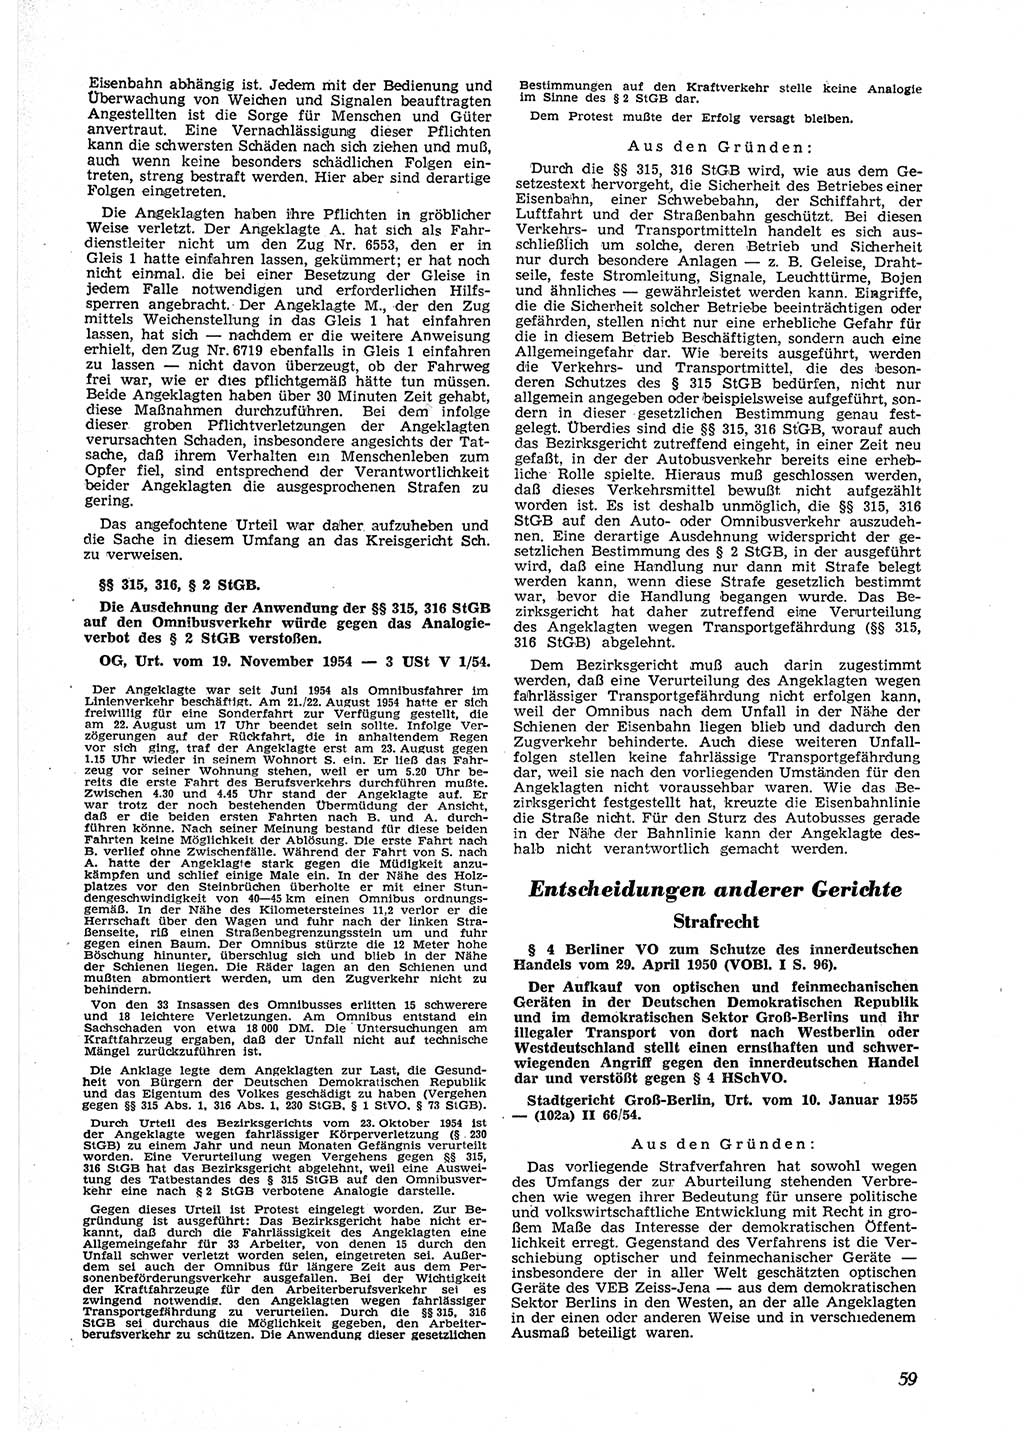 Neue Justiz (NJ), Zeitschrift für Recht und Rechtswissenschaft [Deutsche Demokratische Republik (DDR)], 9. Jahrgang 1955, Seite 59 (NJ DDR 1955, S. 59)